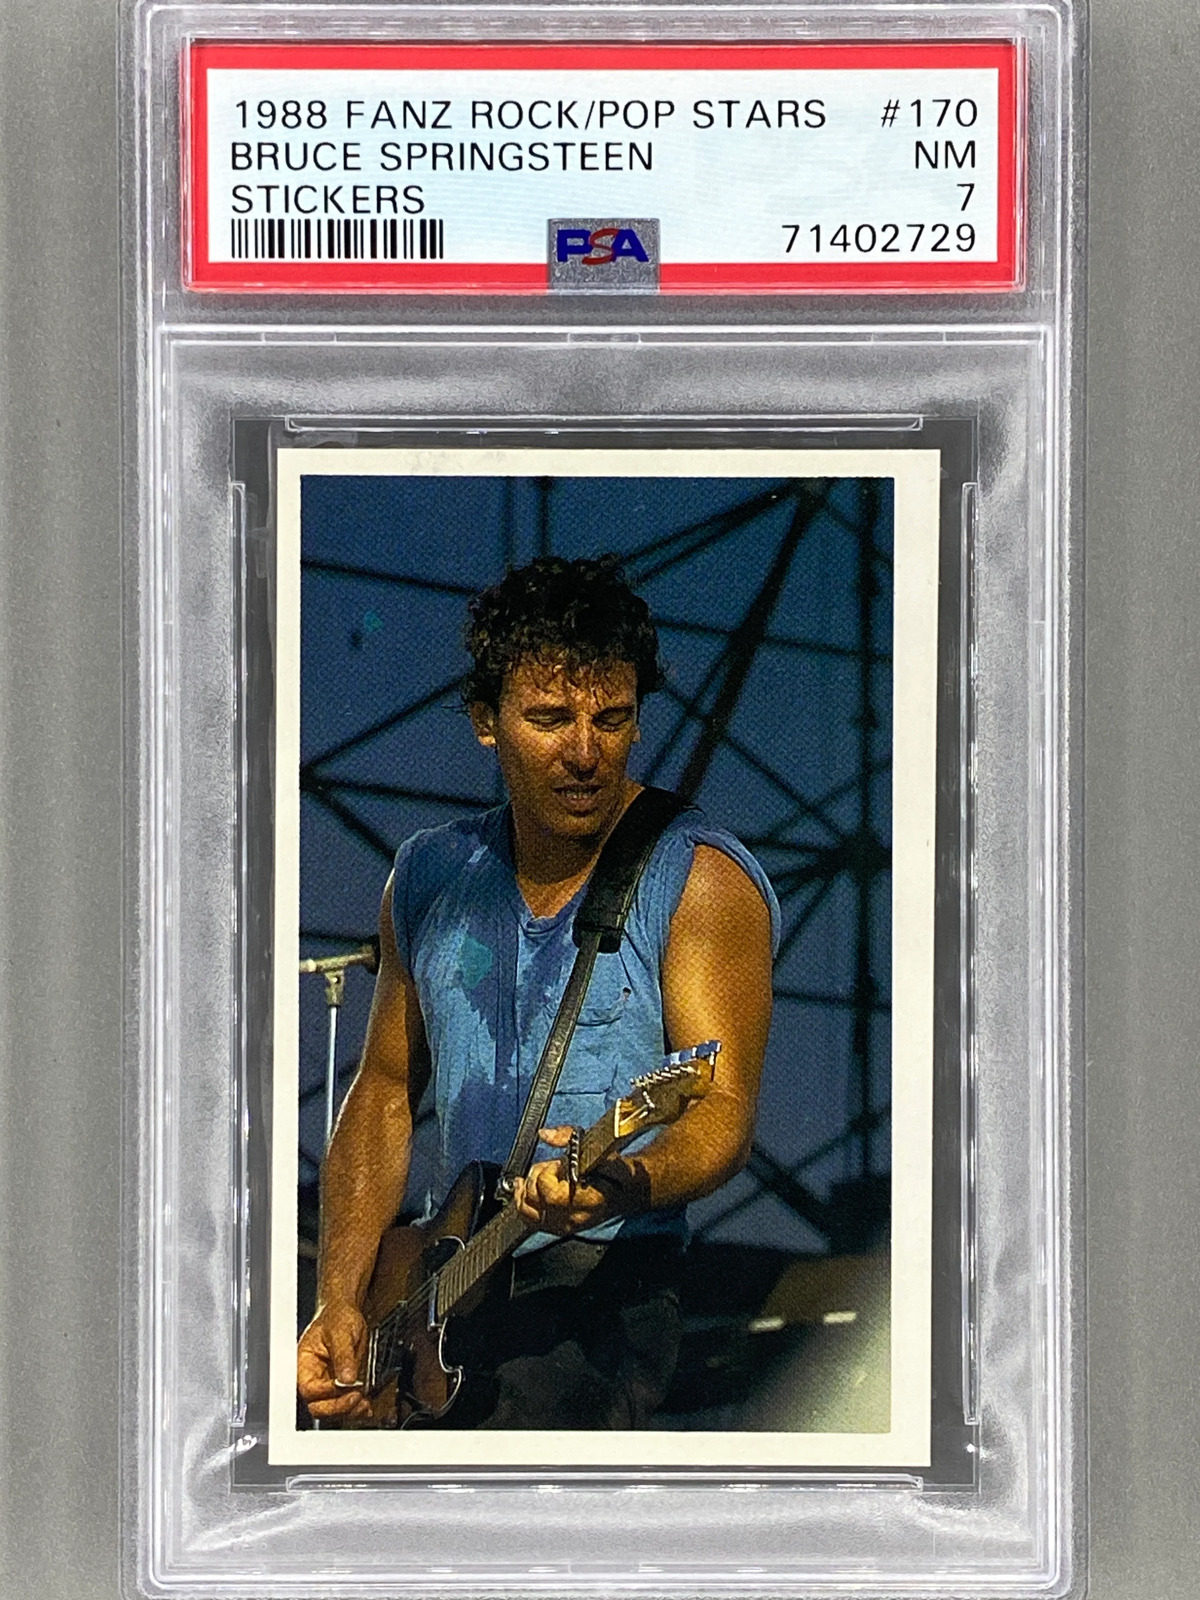 1988 Fanz #170 Bruce Springsteen Rock/Pop Stars Stickers PSA 7 - Pop 1 (Music)